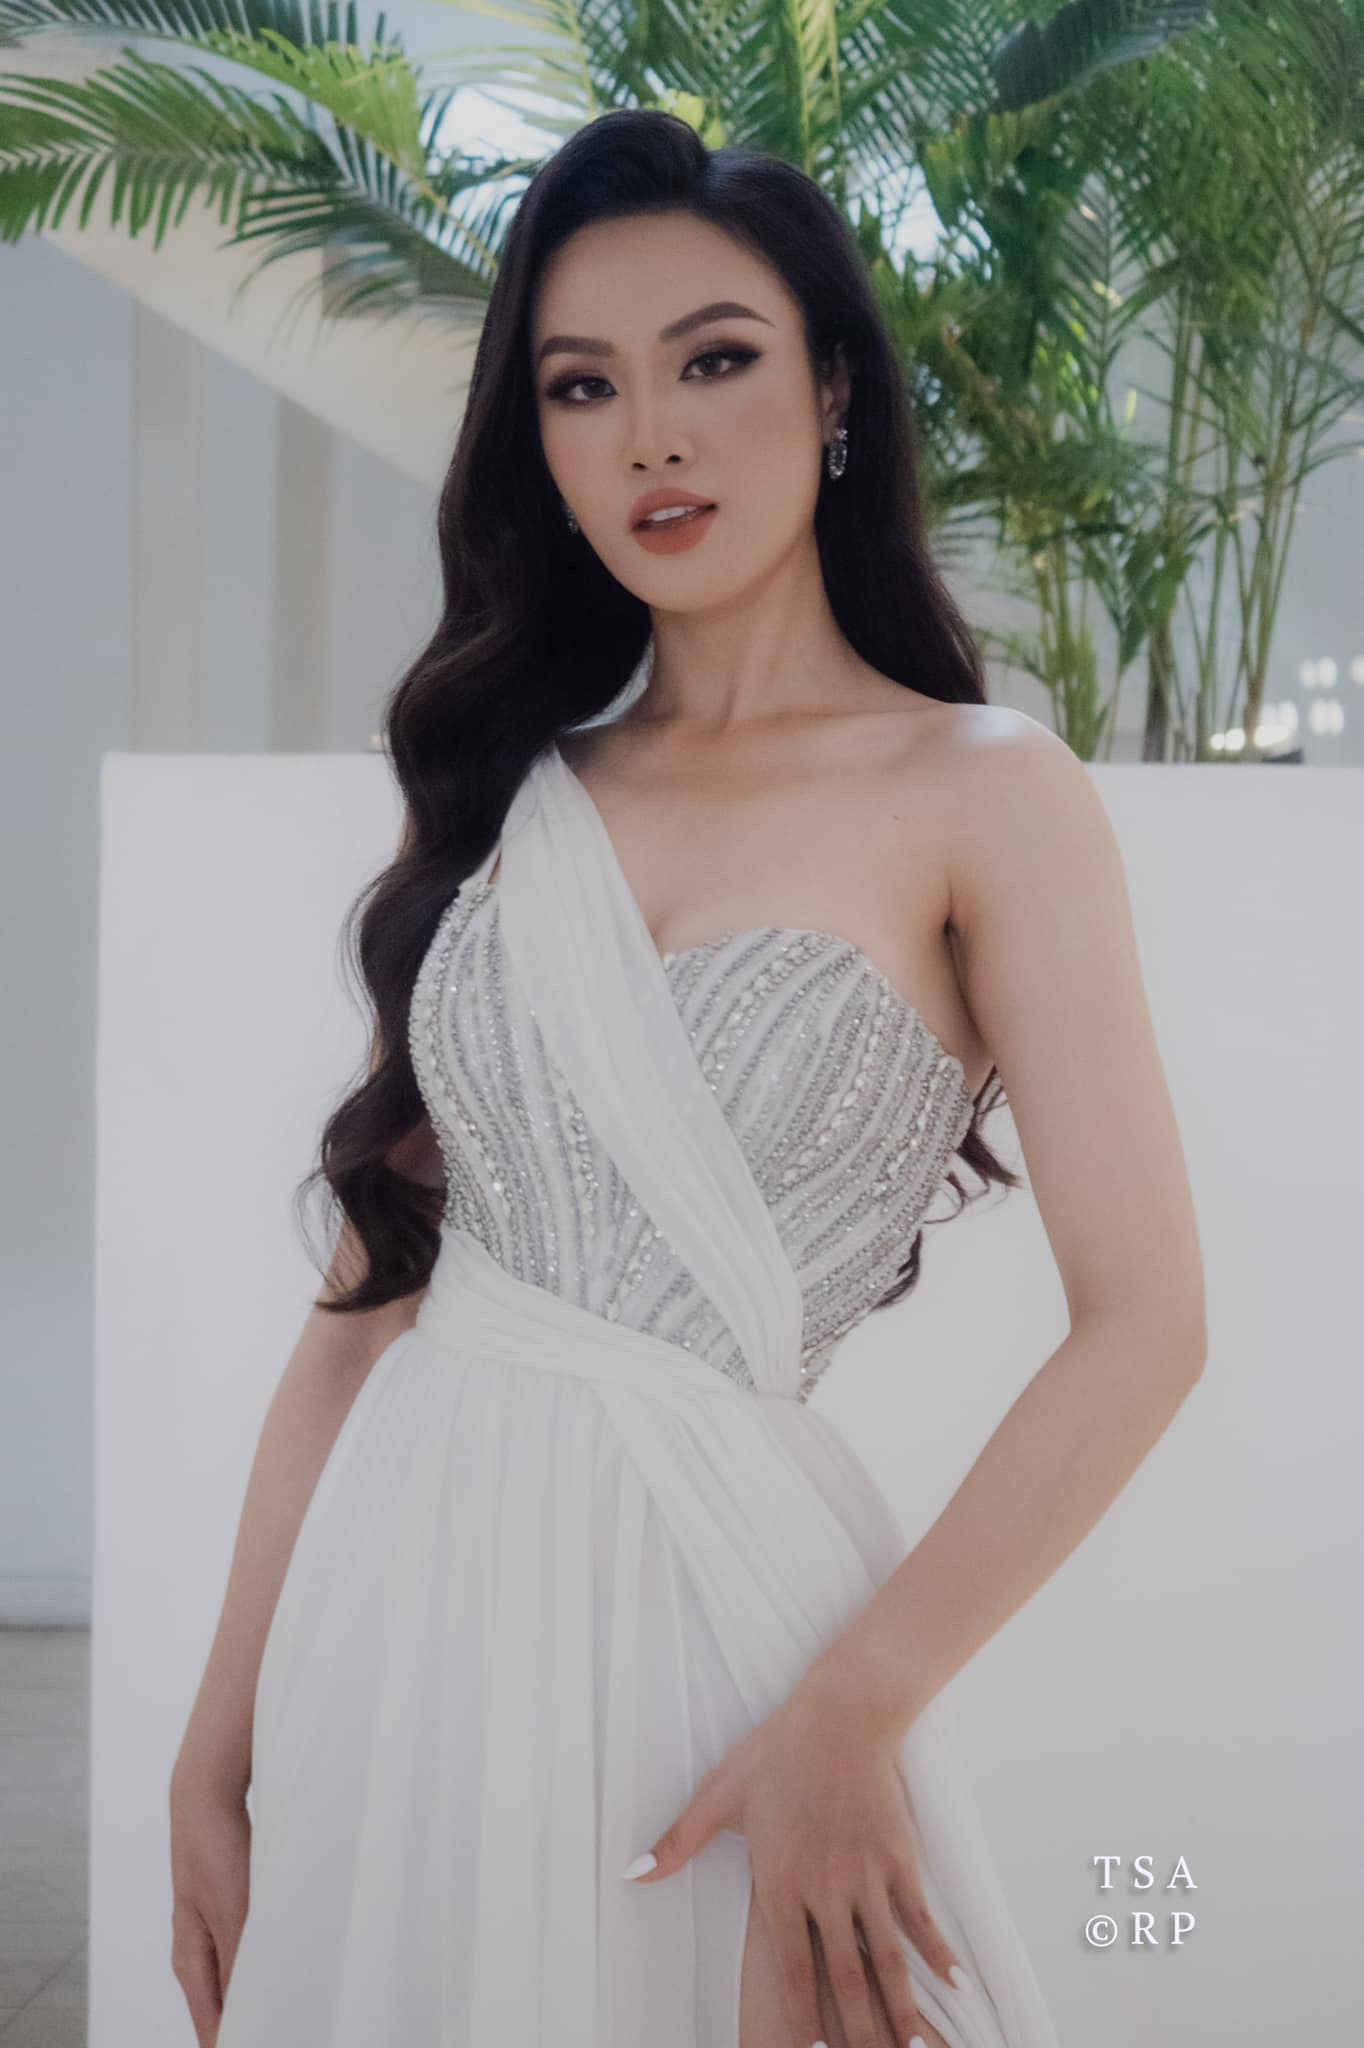 Hoa khôi Ngoại thương Huỳnh Phạm Thủy Tiên từng nặng 90kg 'lột xác' tại Hoa hậu Hoàn vũ 2022 - Ảnh 7